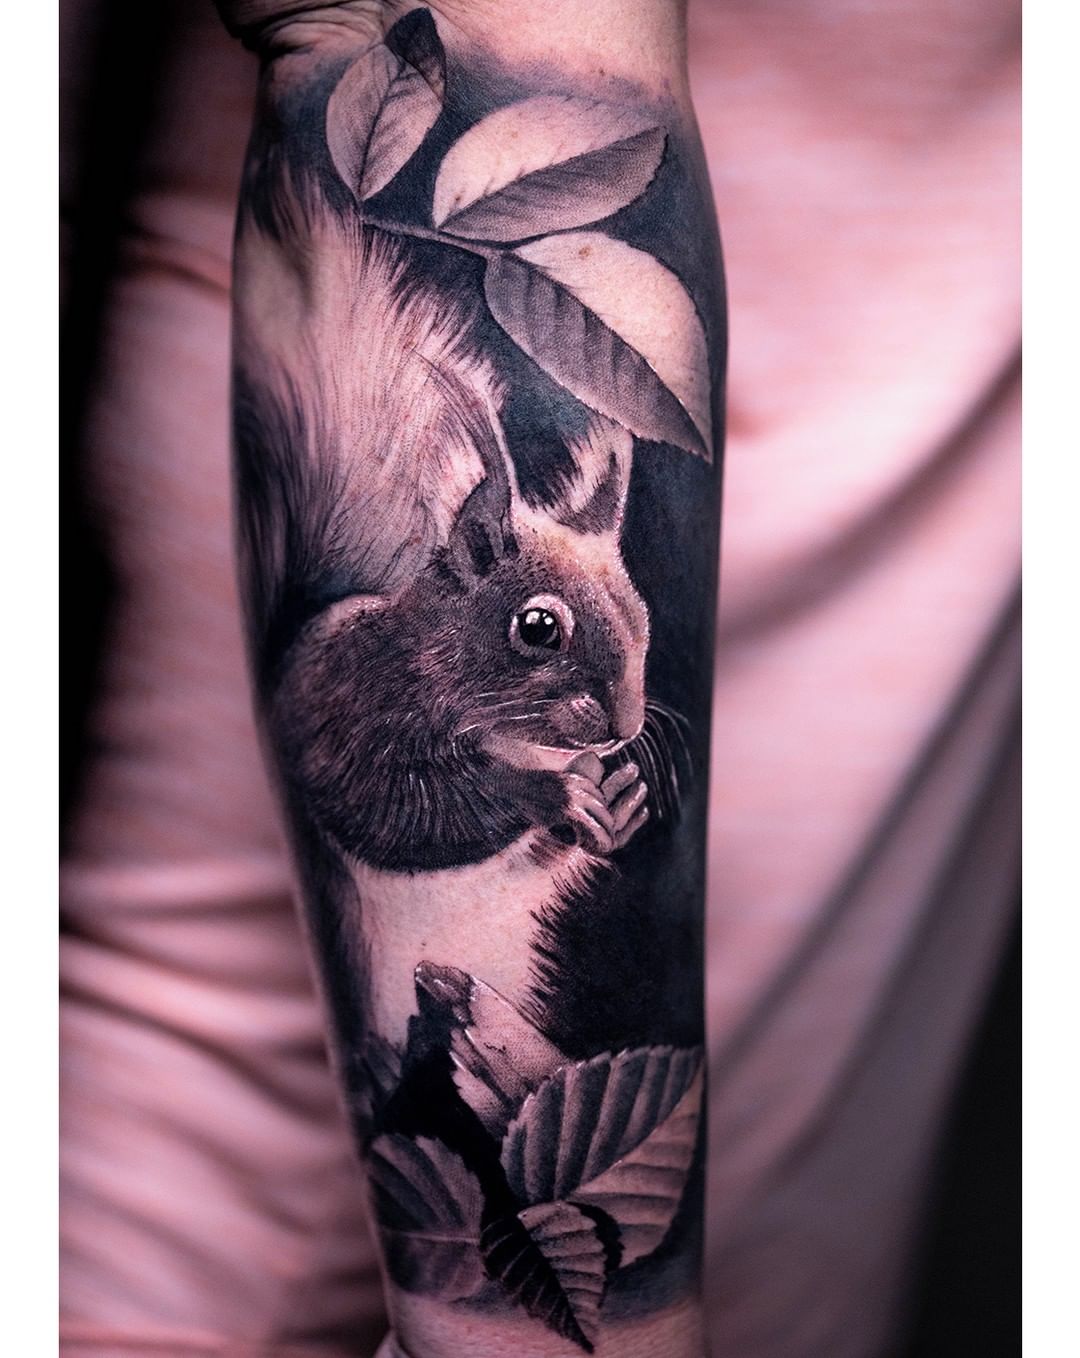 Fat Squirrel Tattoo - Best Tattoo Ideas Gallery